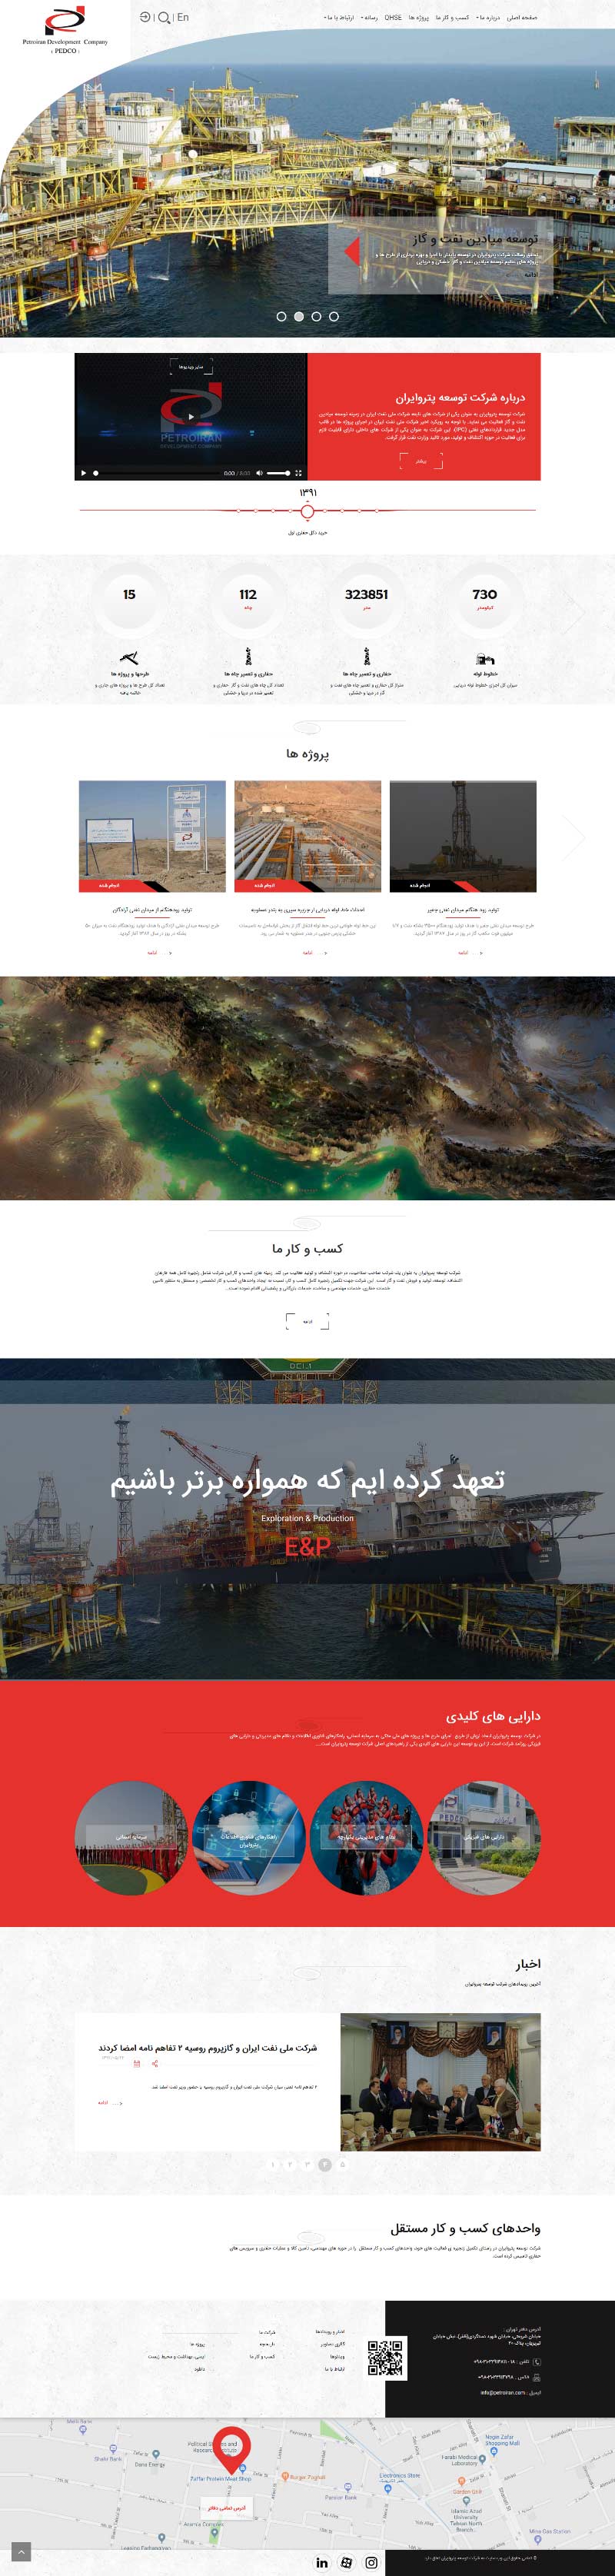 طراحی سایت پترو ایران